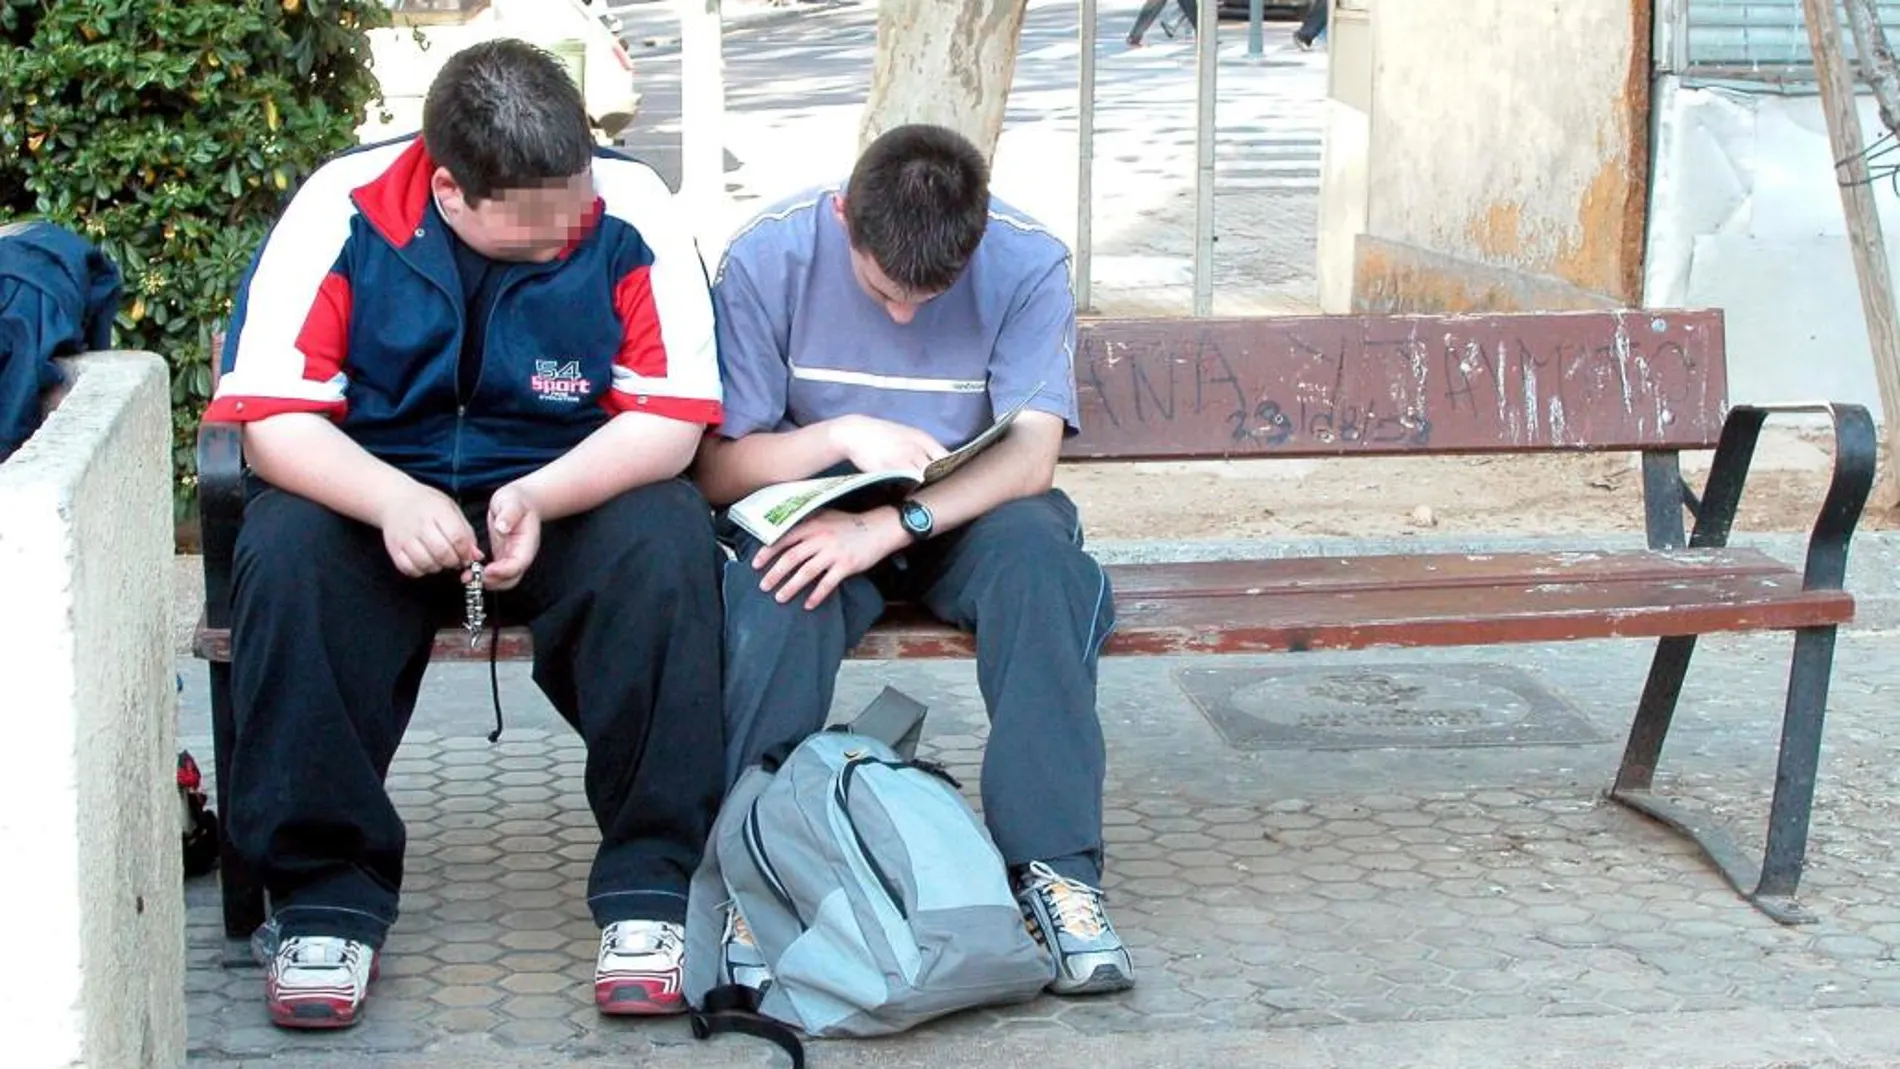 Las tasas de obesidad y sobrepeso son relativamente altas en España, especialmente entre los adolescentes.